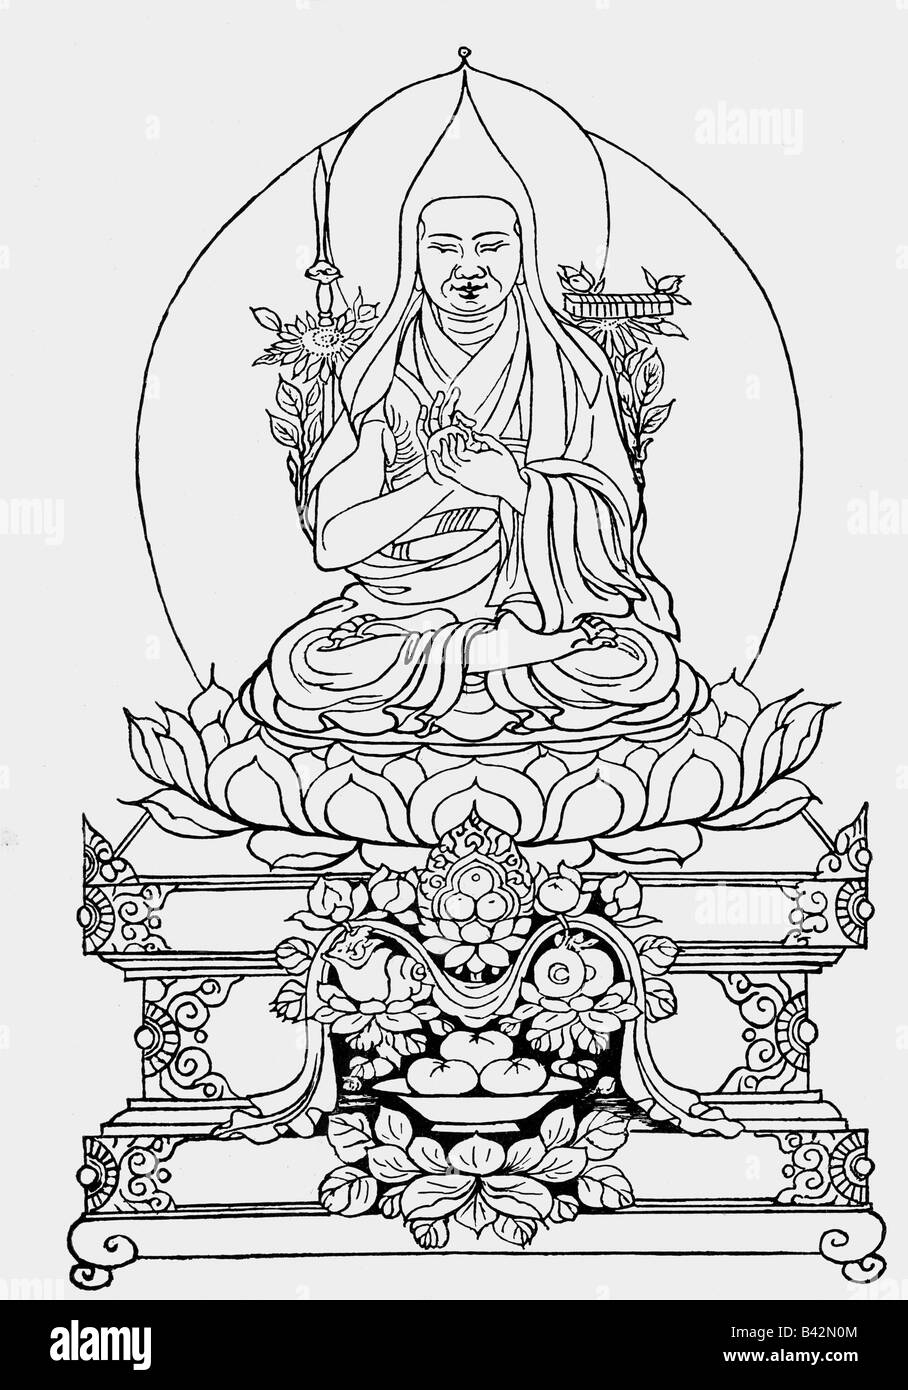 Bouddha, Prince Siddharta Gautama, 563 BC - 483 AC, fondateur indien d'une religion, drauing fait à la main du Tibet, Banque D'Images